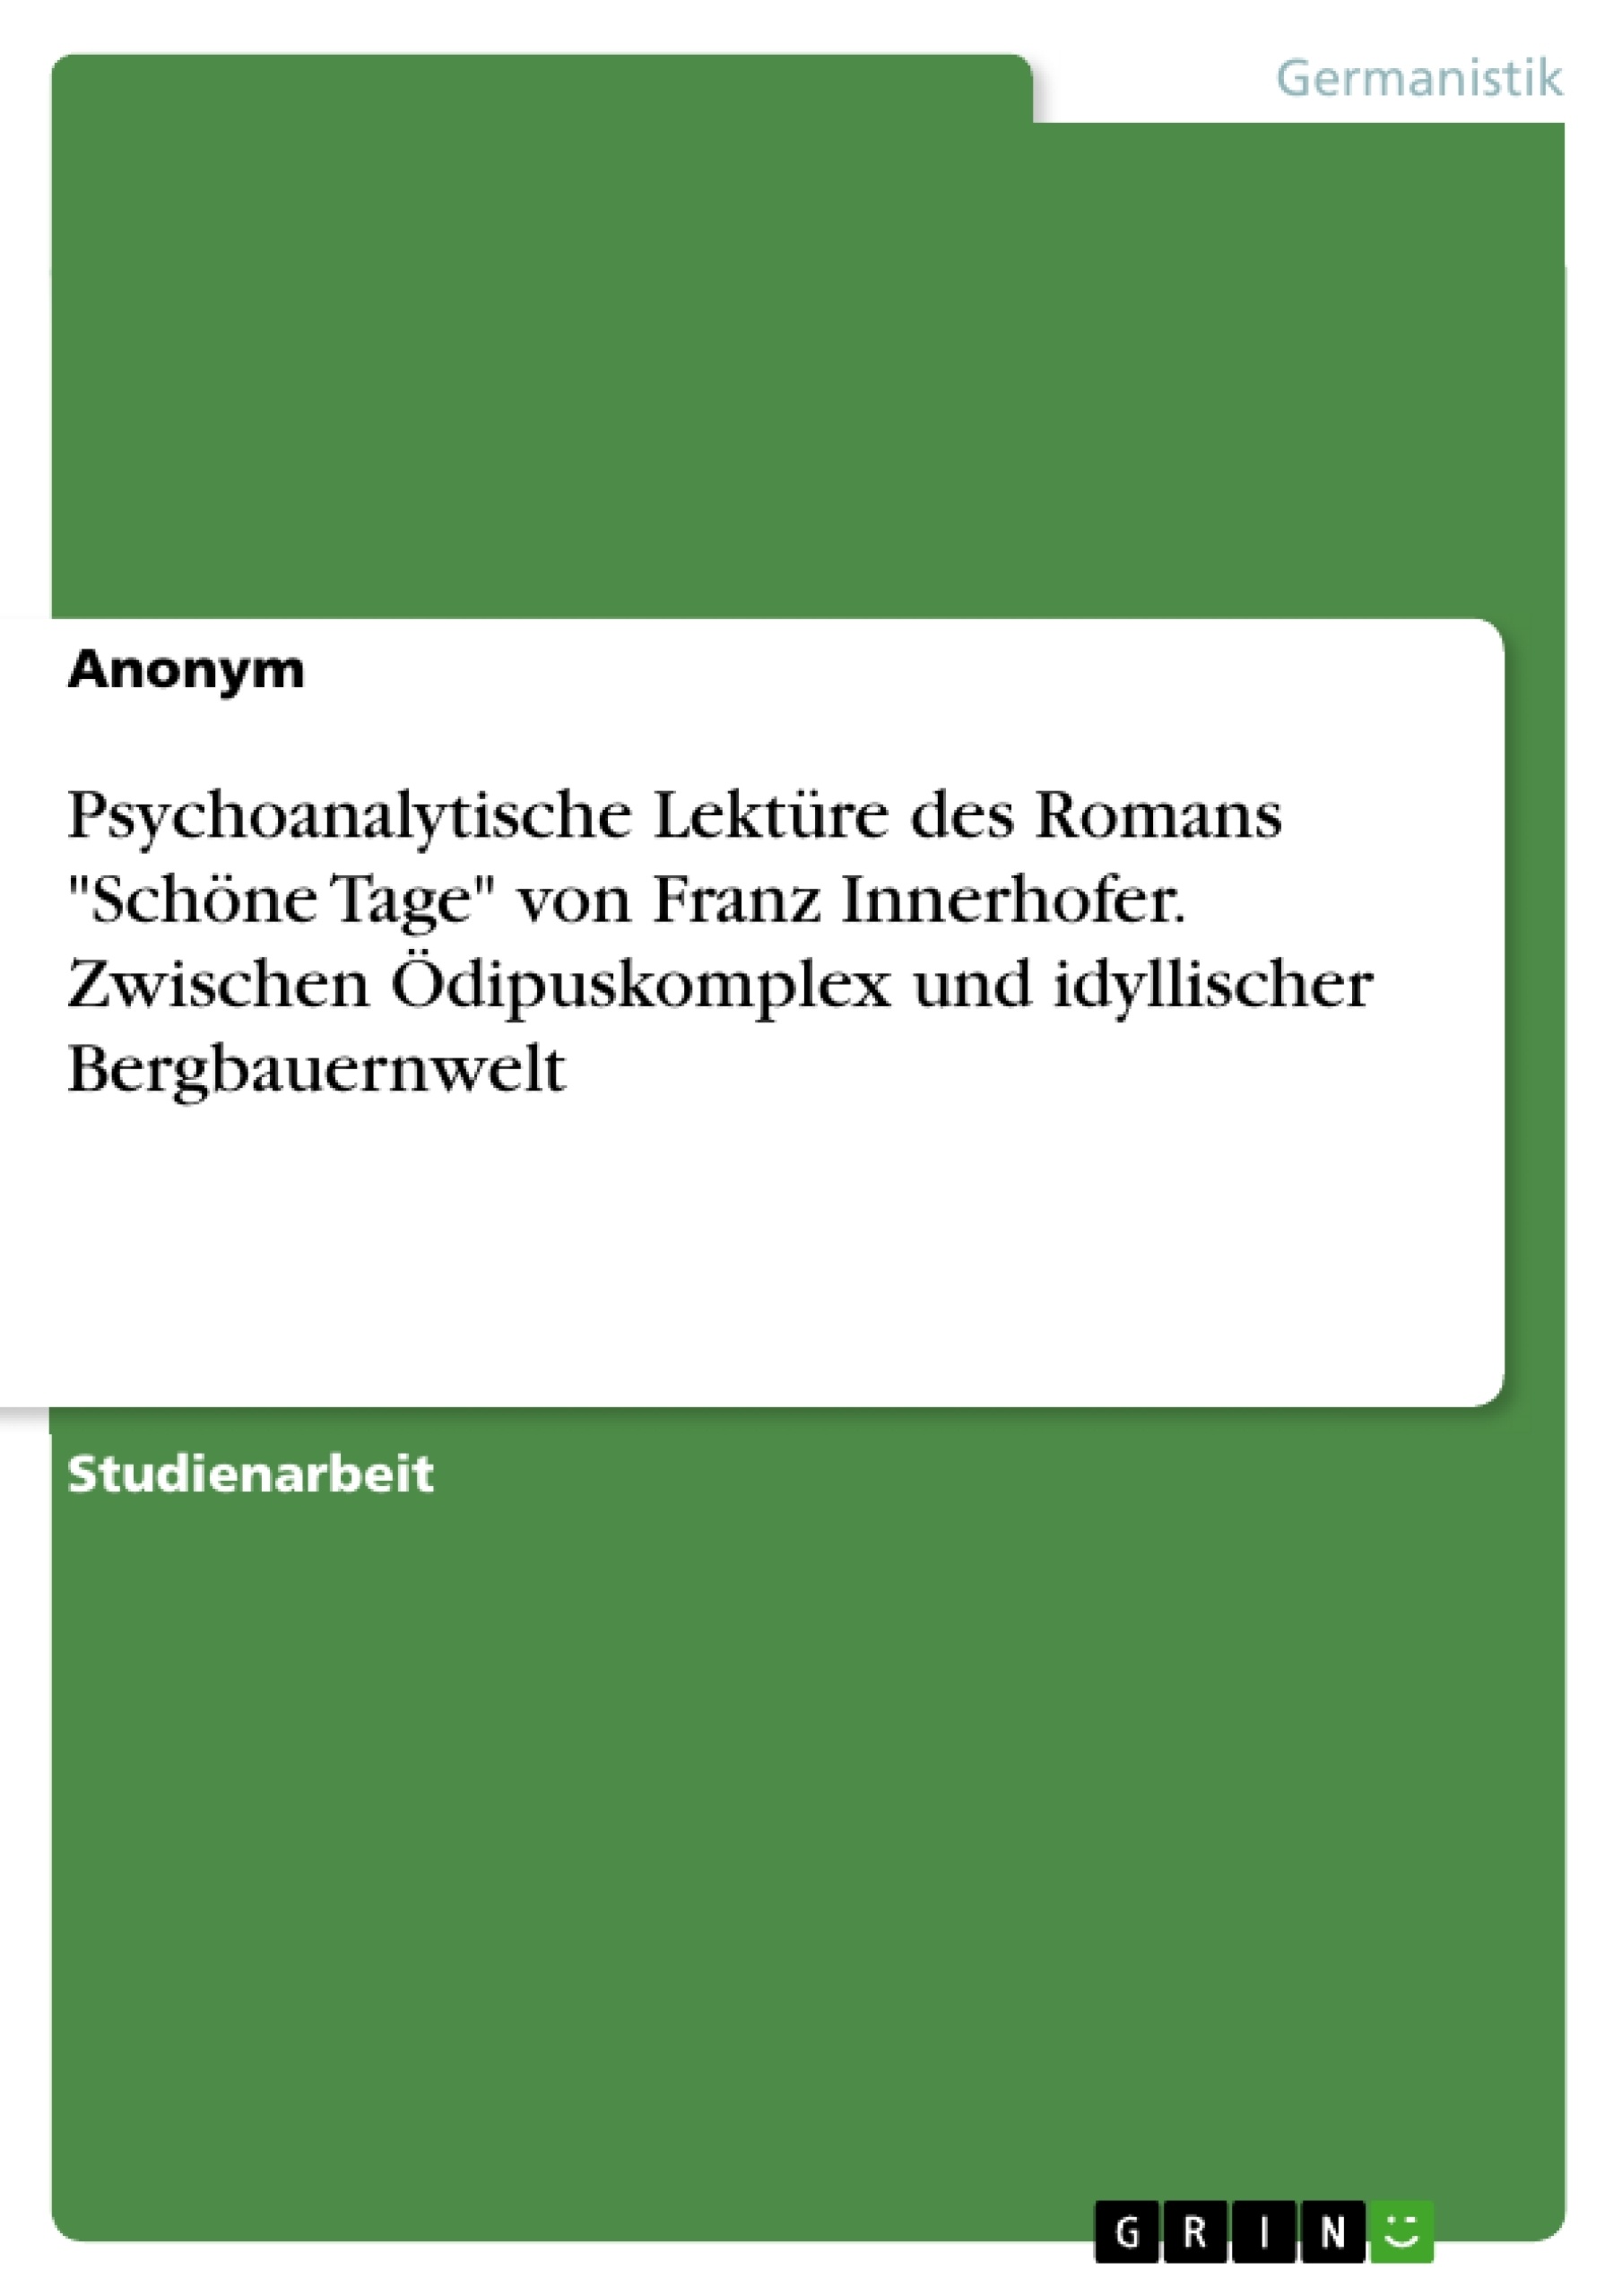 Title: Psychoanalytische Lektüre des Romans "Schöne Tage" von Franz Innerhofer. Zwischen Ödipuskomplex und idyllischer Bergbauernwelt